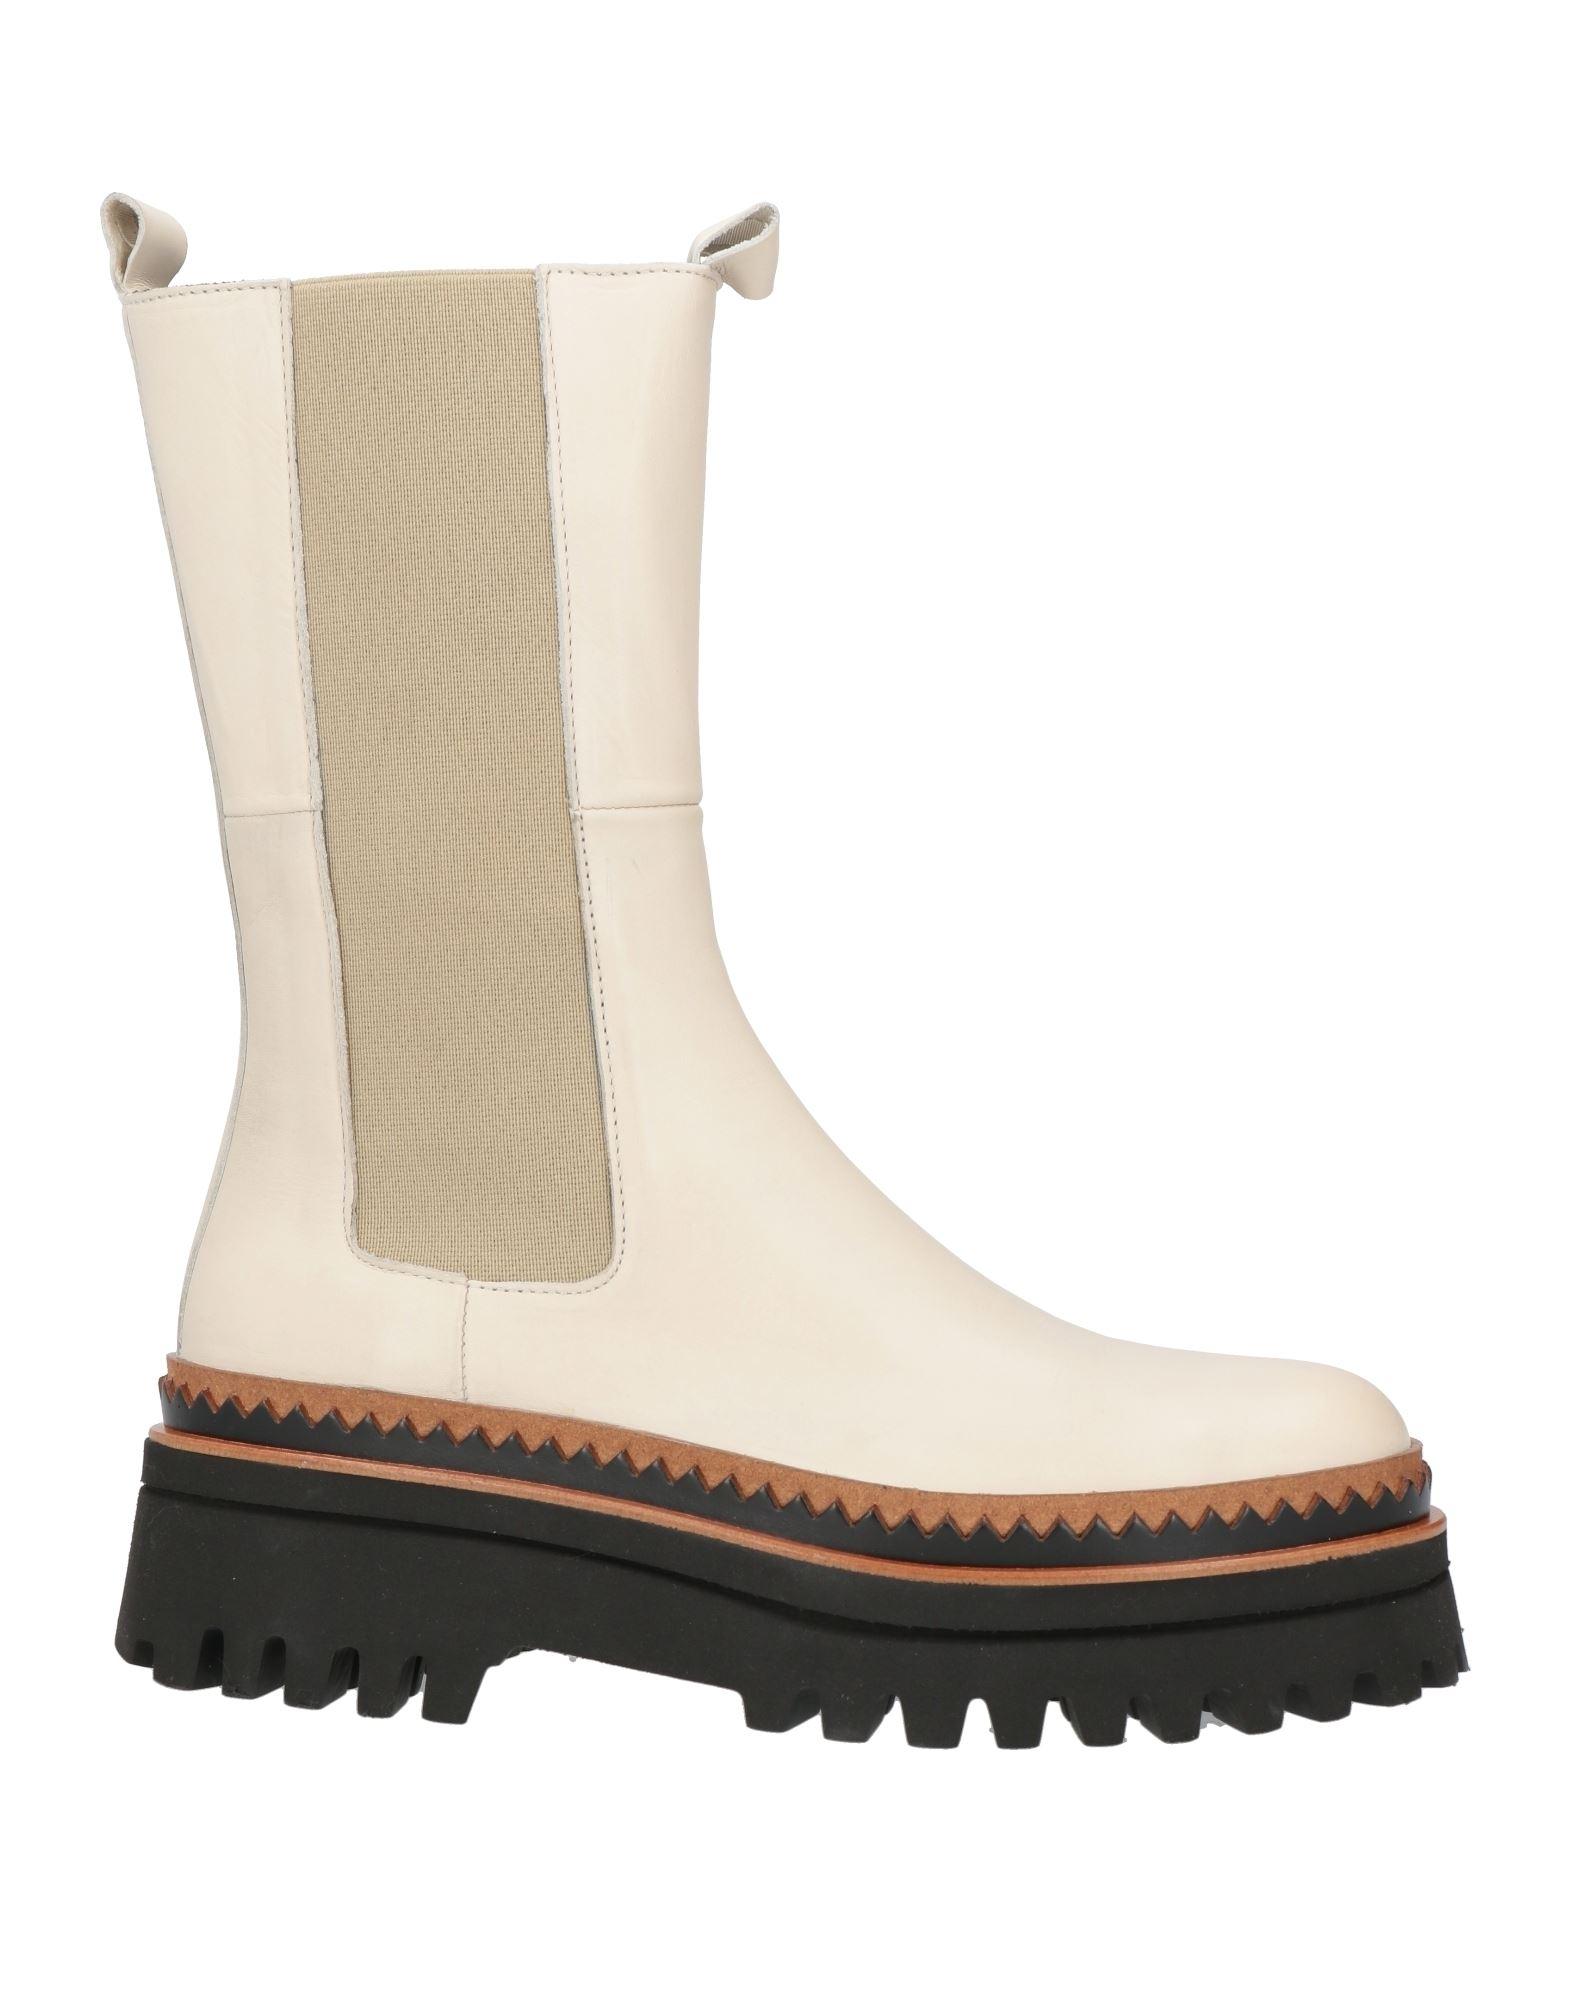 Elvio Zanon Ankle Boots in White | Lyst